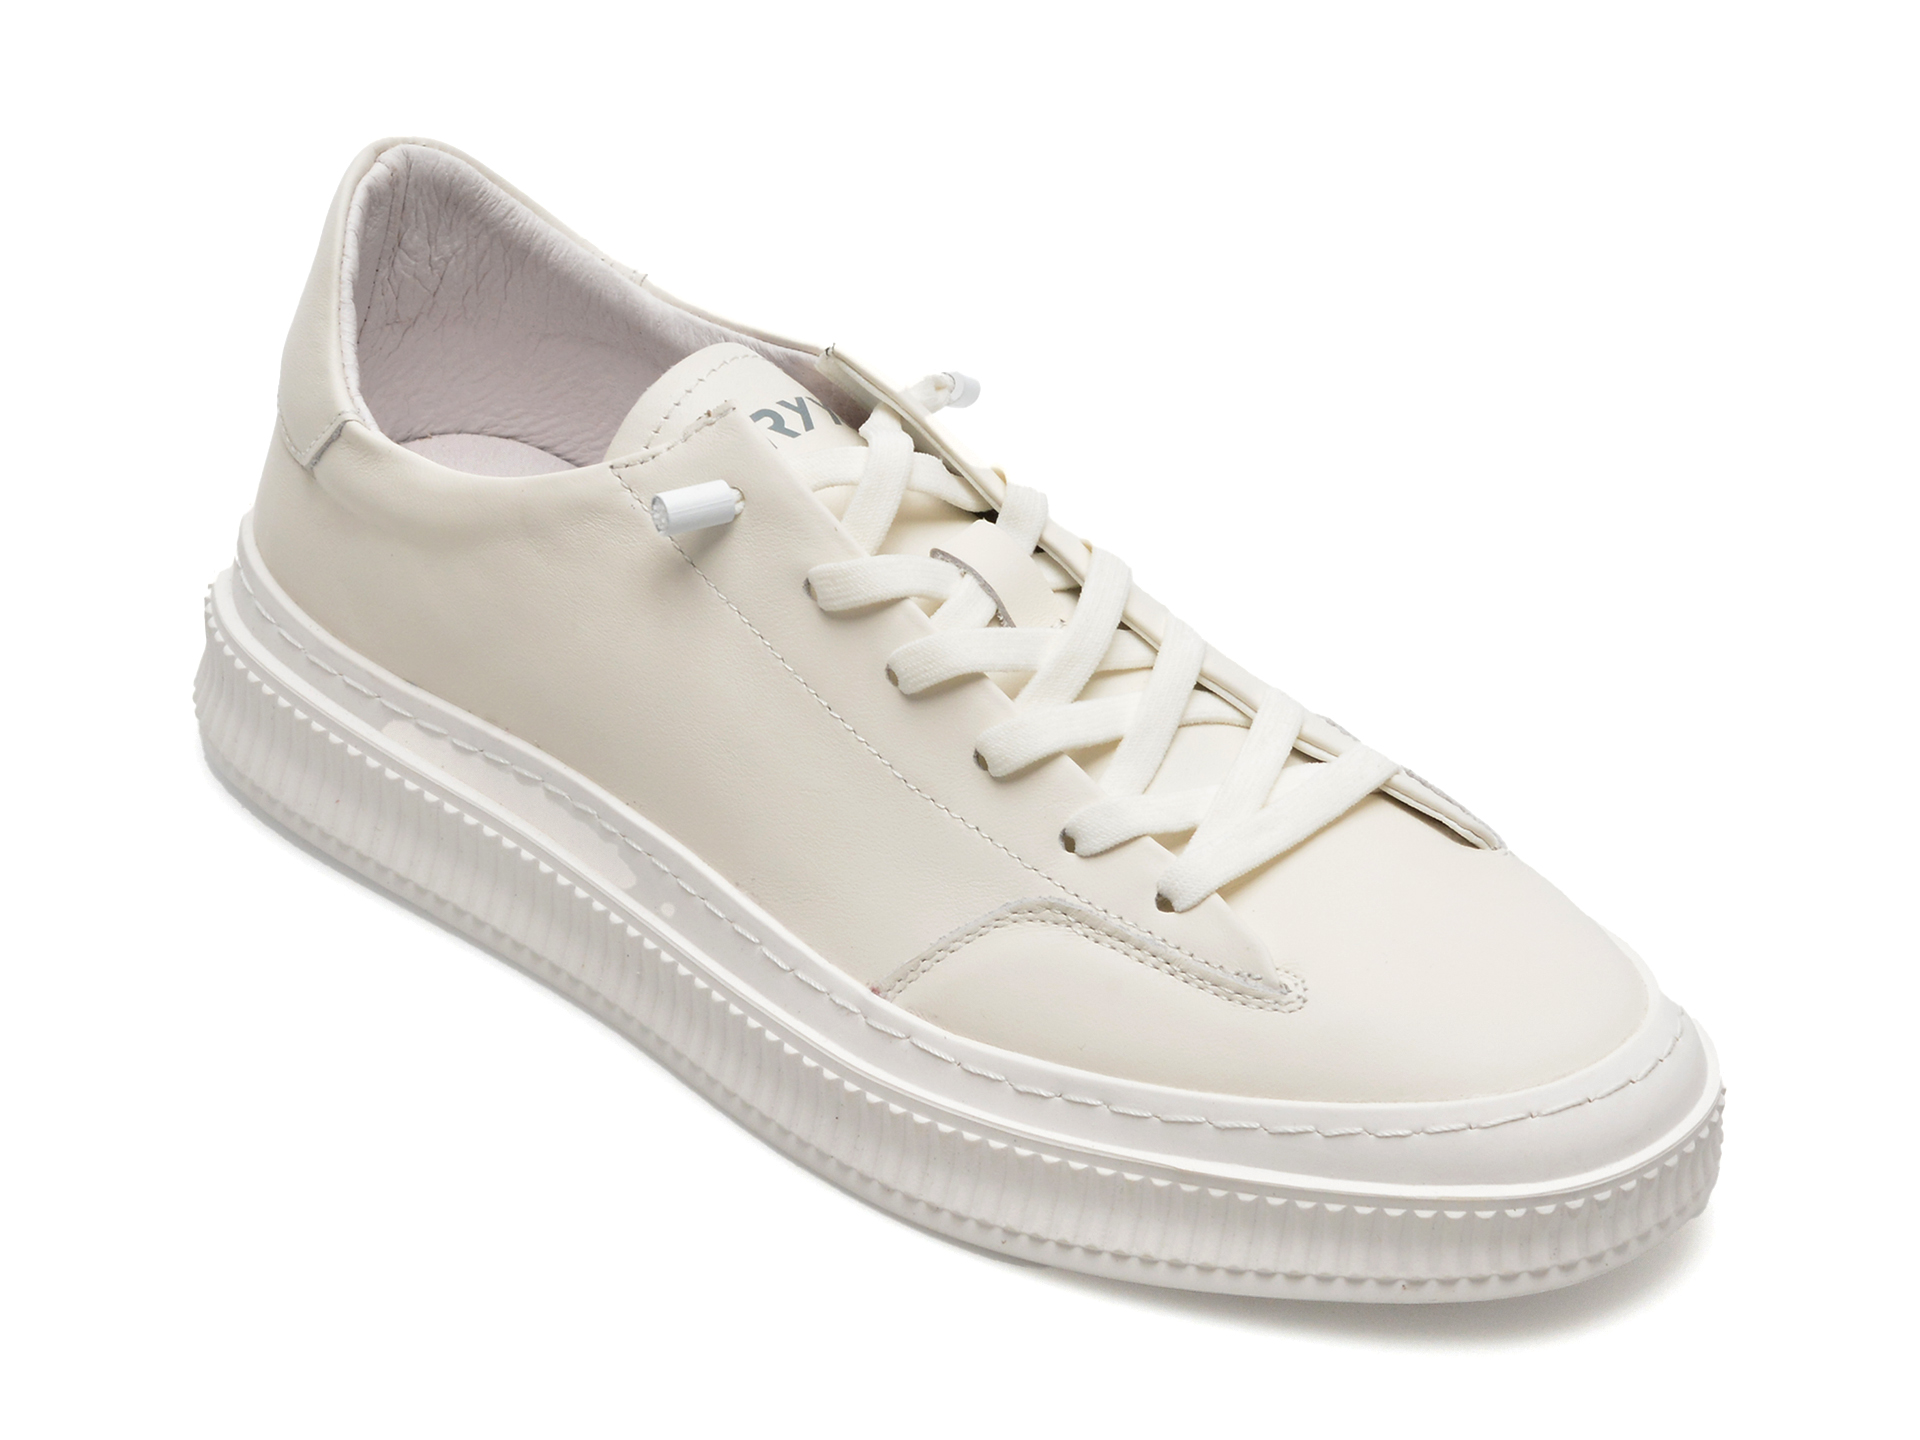 Pantofi GRYXX albi, F037, din piele naturala